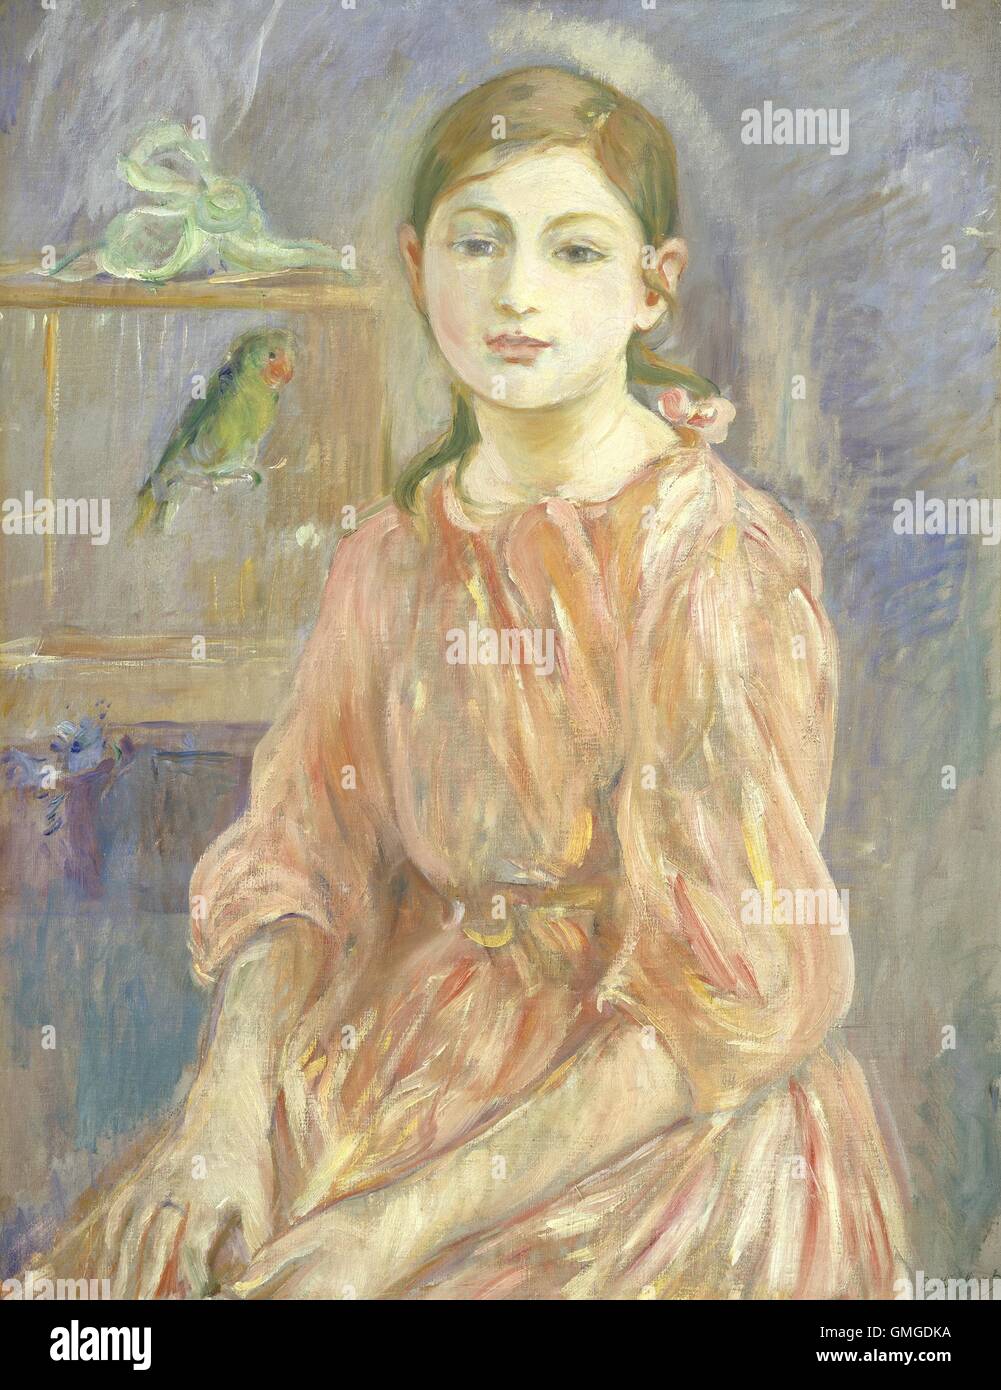 Die Tochter des Künstlers mit einem Sittich von Berthe Morisot, 1890, französischer impressionistischen Malerei, Öl auf Leinwand. Morisot studierte mit Schule von Barbizon Maler Camille Corot, wer ihr beigebracht wie man "En Plein Air" zu malen. Sie heiratete auch Manetss Brühe (BSLOC 2016 5 169) Stockfoto